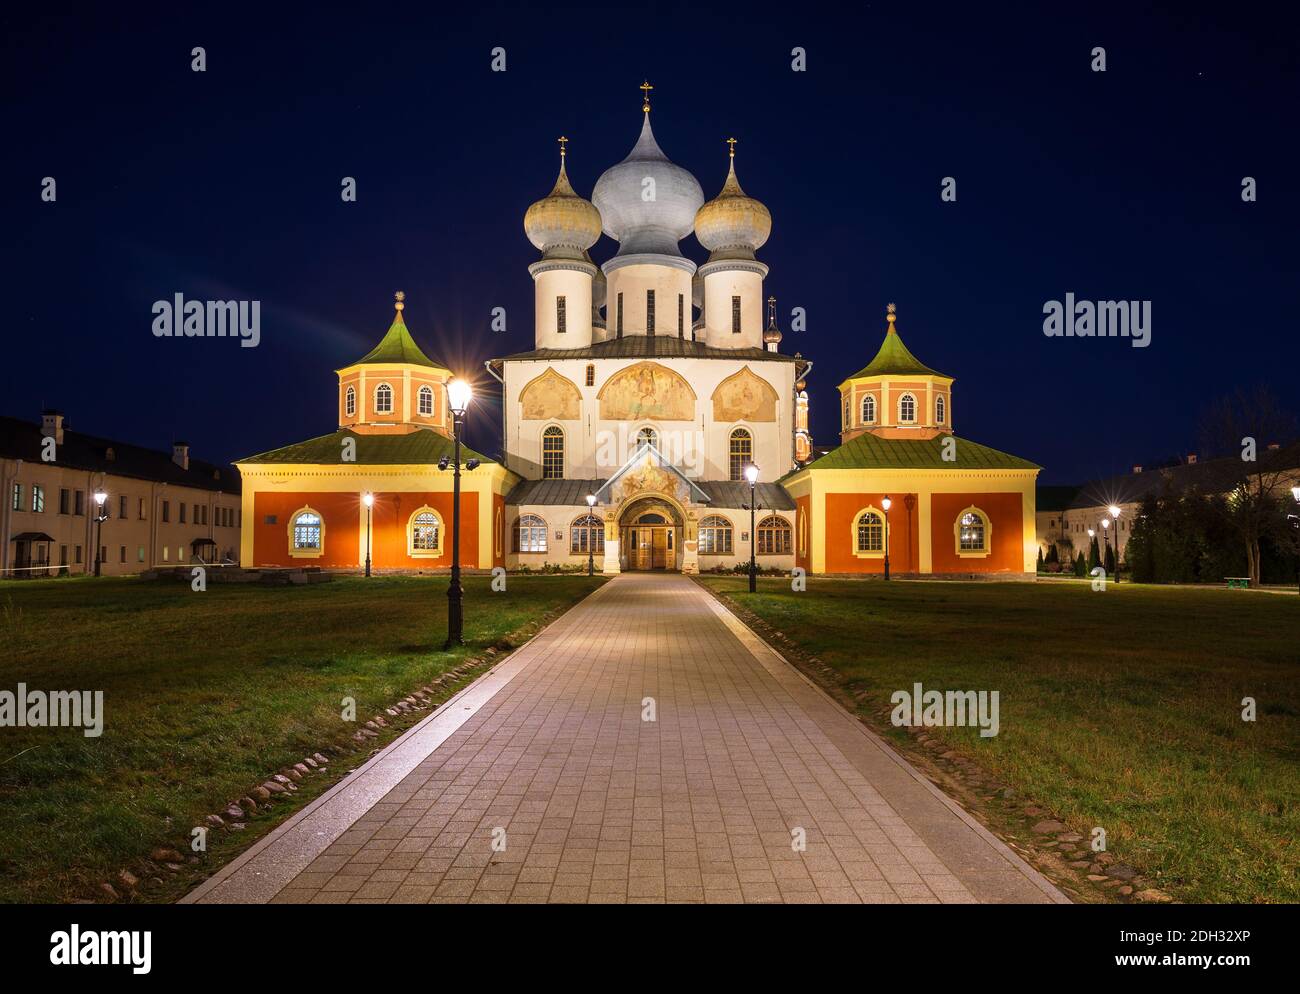 Presunzione Cattedrale del Monastero di Tikhvin con illuminazione serale. Tikhvin, regione di Leningrado, Russia Foto Stock